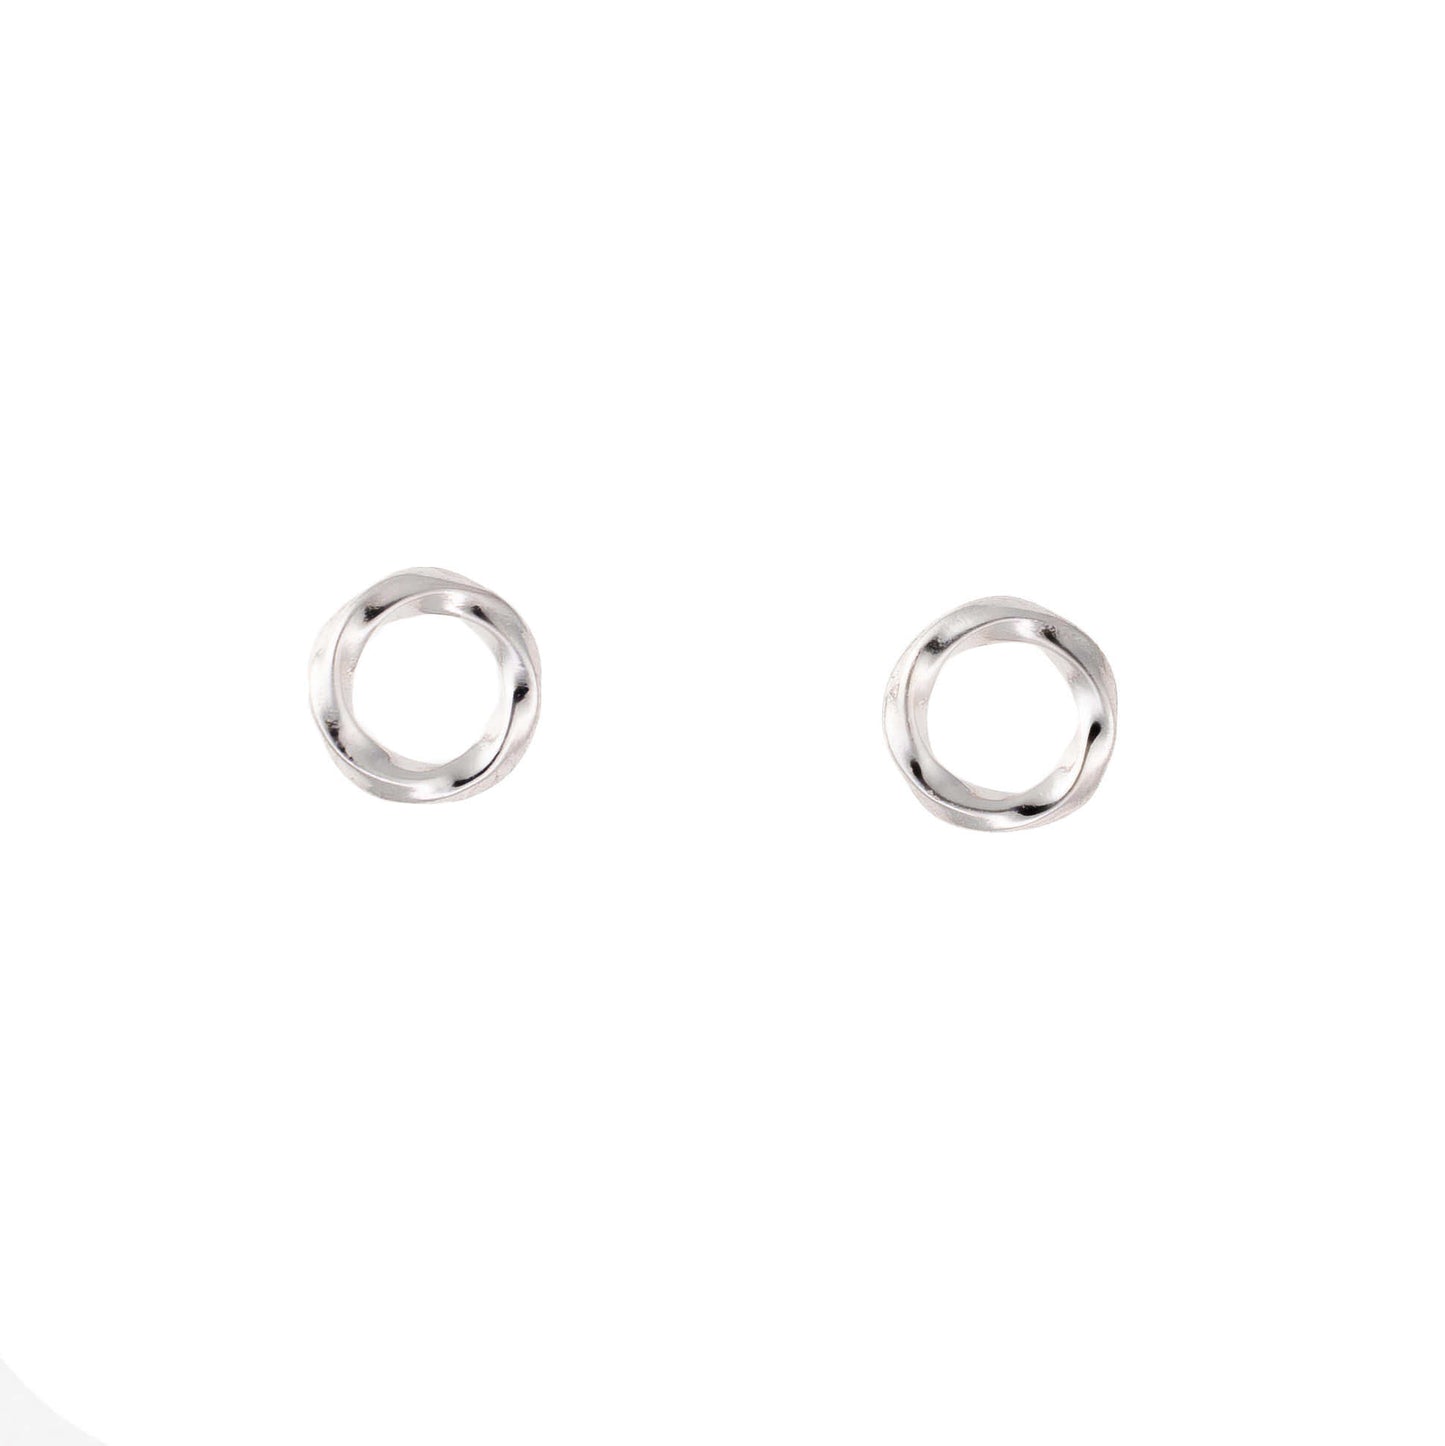 925 sterling silver earrings "Urte"